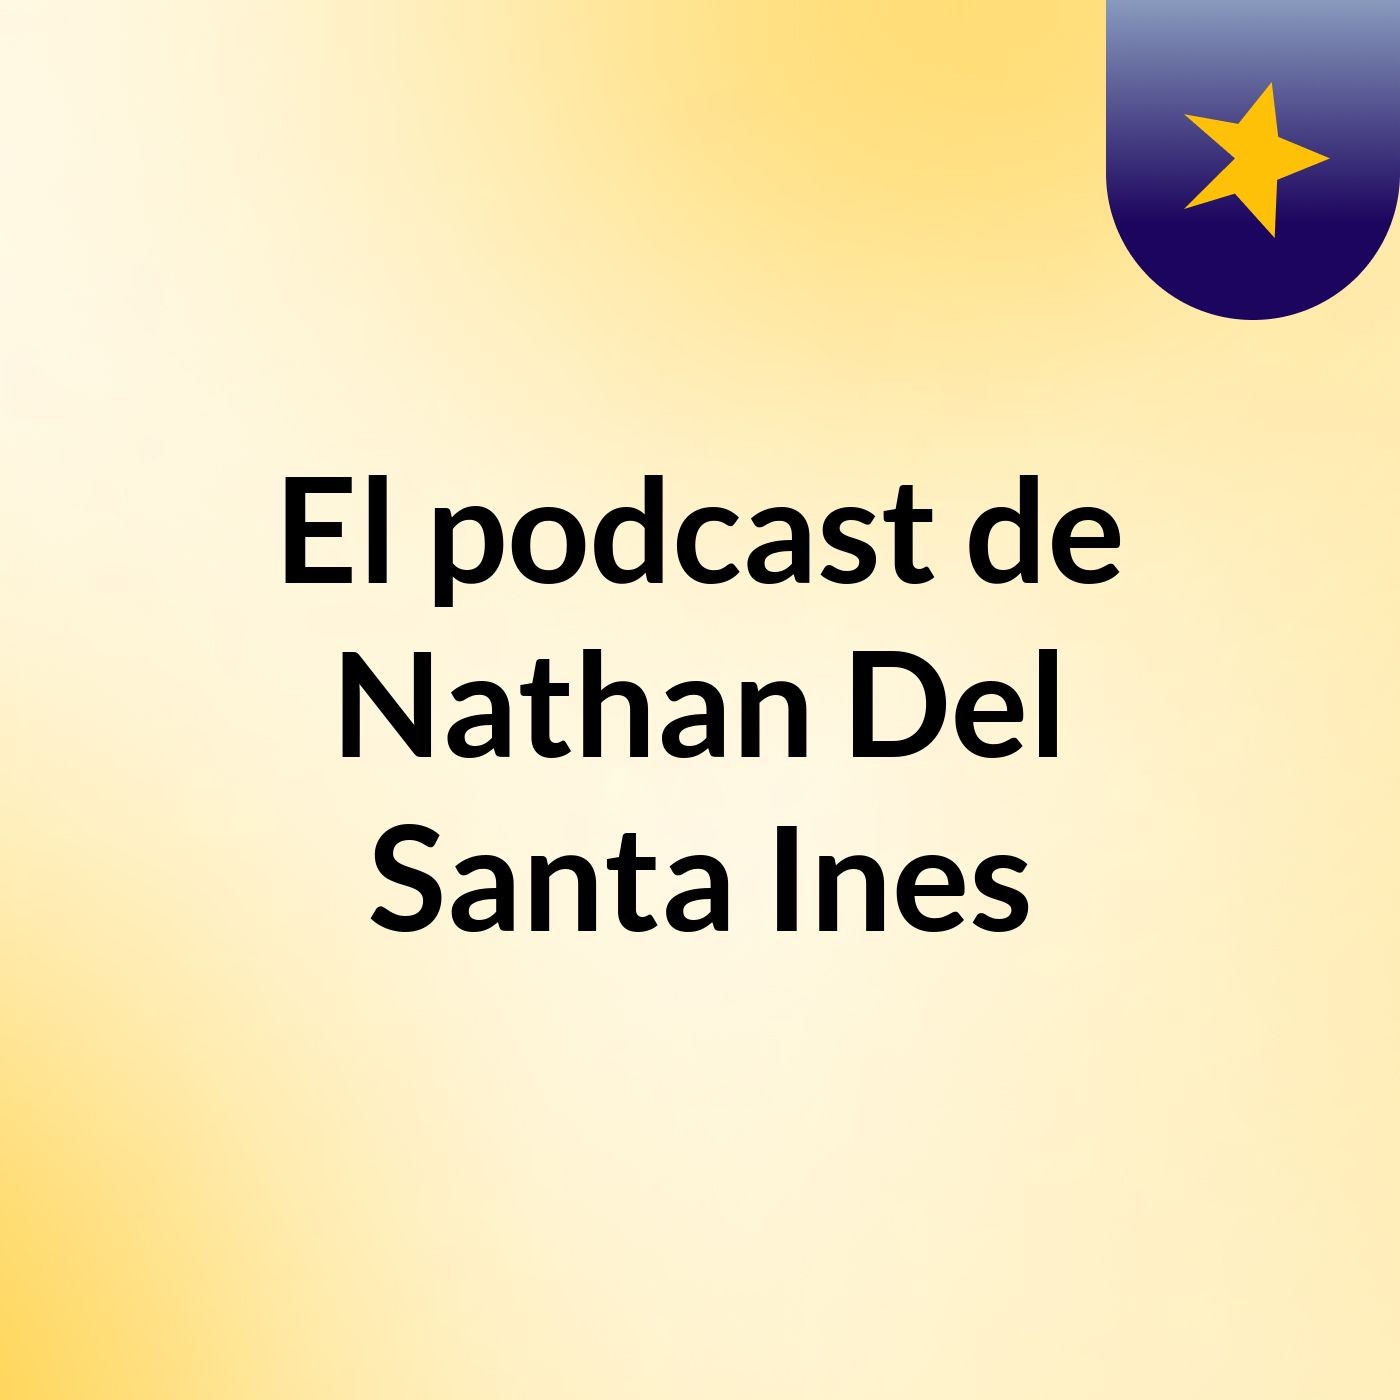 El podcast de Nathan Del Santa Ines